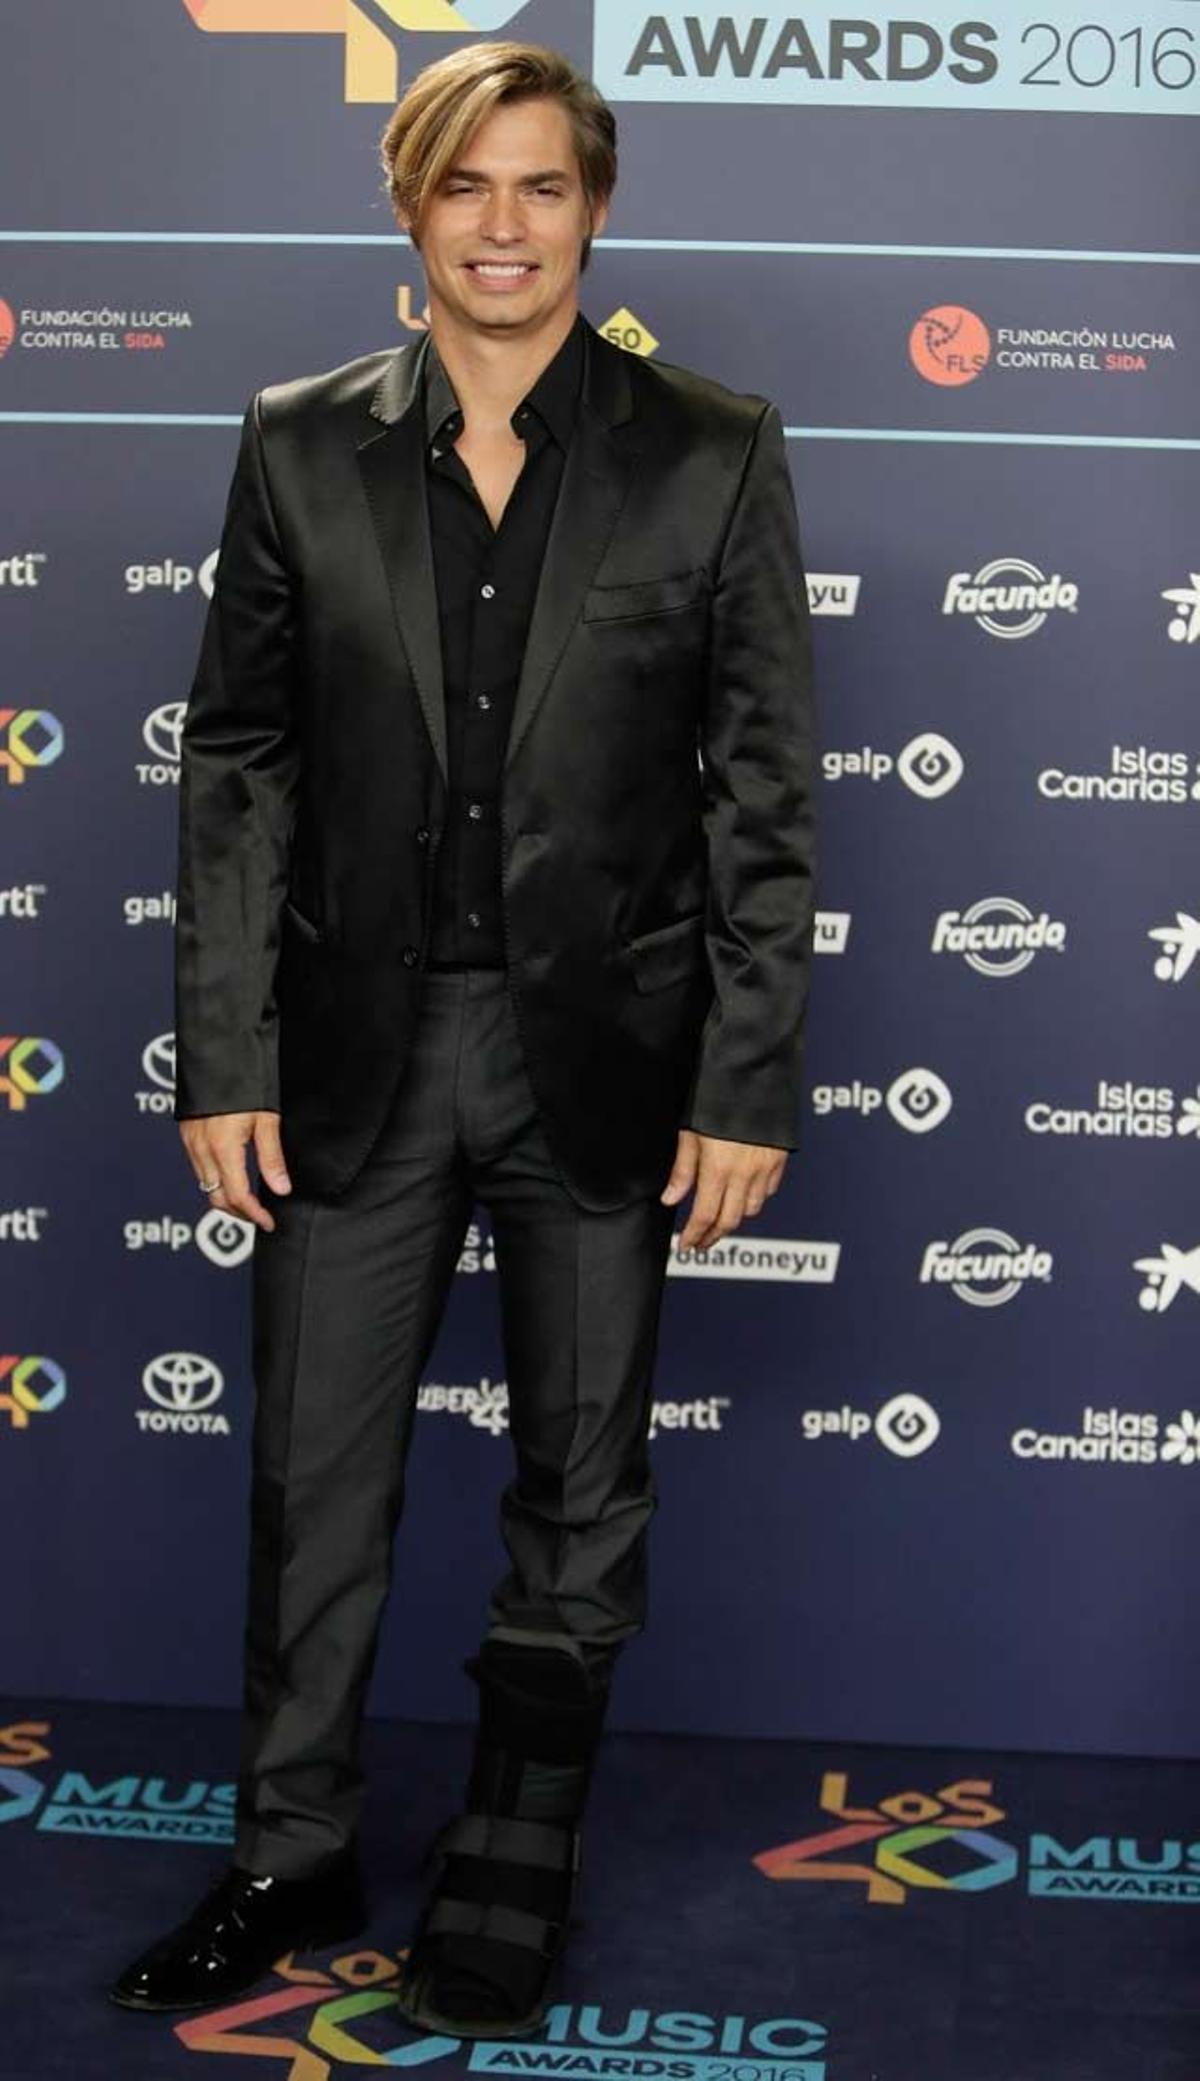 Carlos Baute y su sonrisa en la cena de los 40 Music Awards